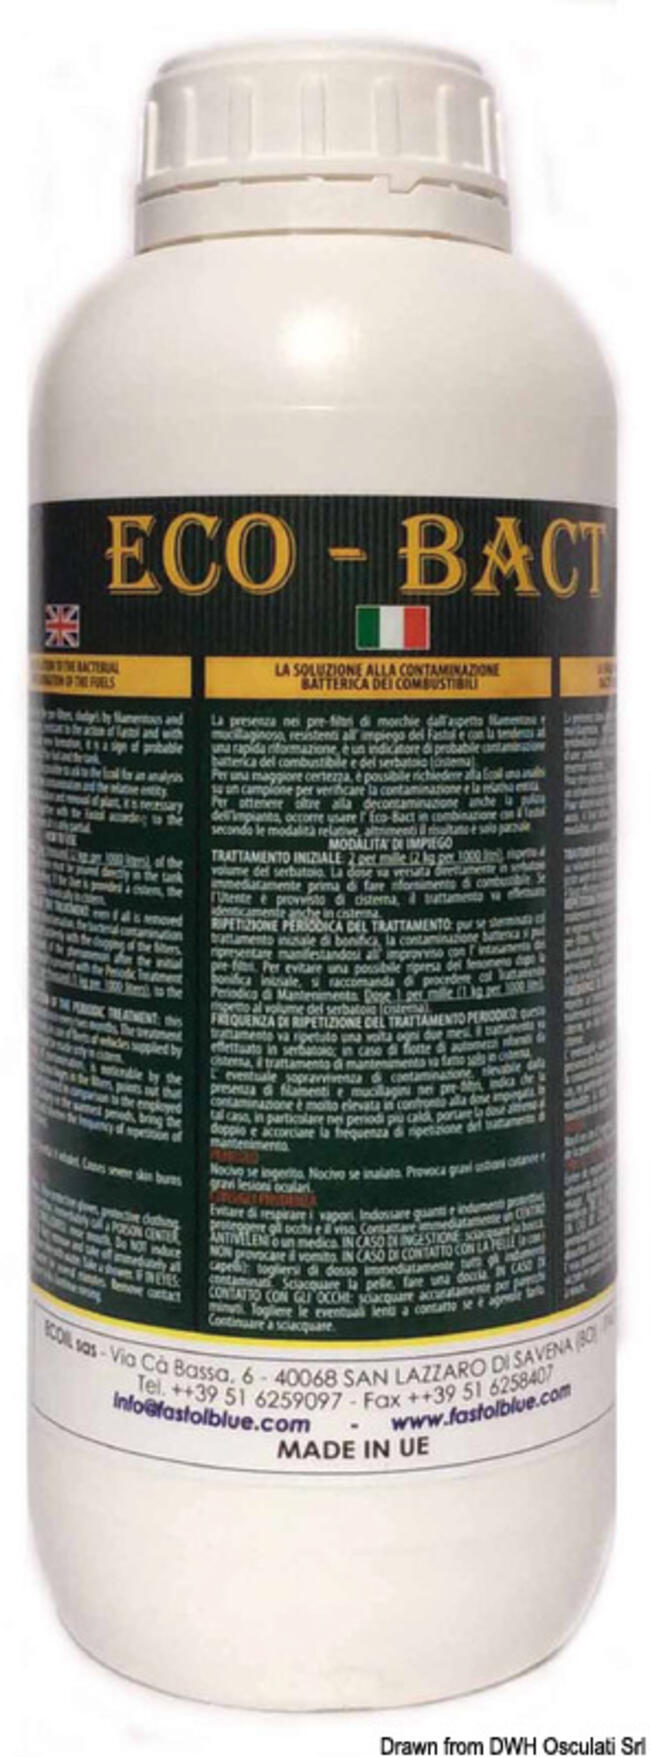 Battericida Ecobact Per Gasolio 1 Kg